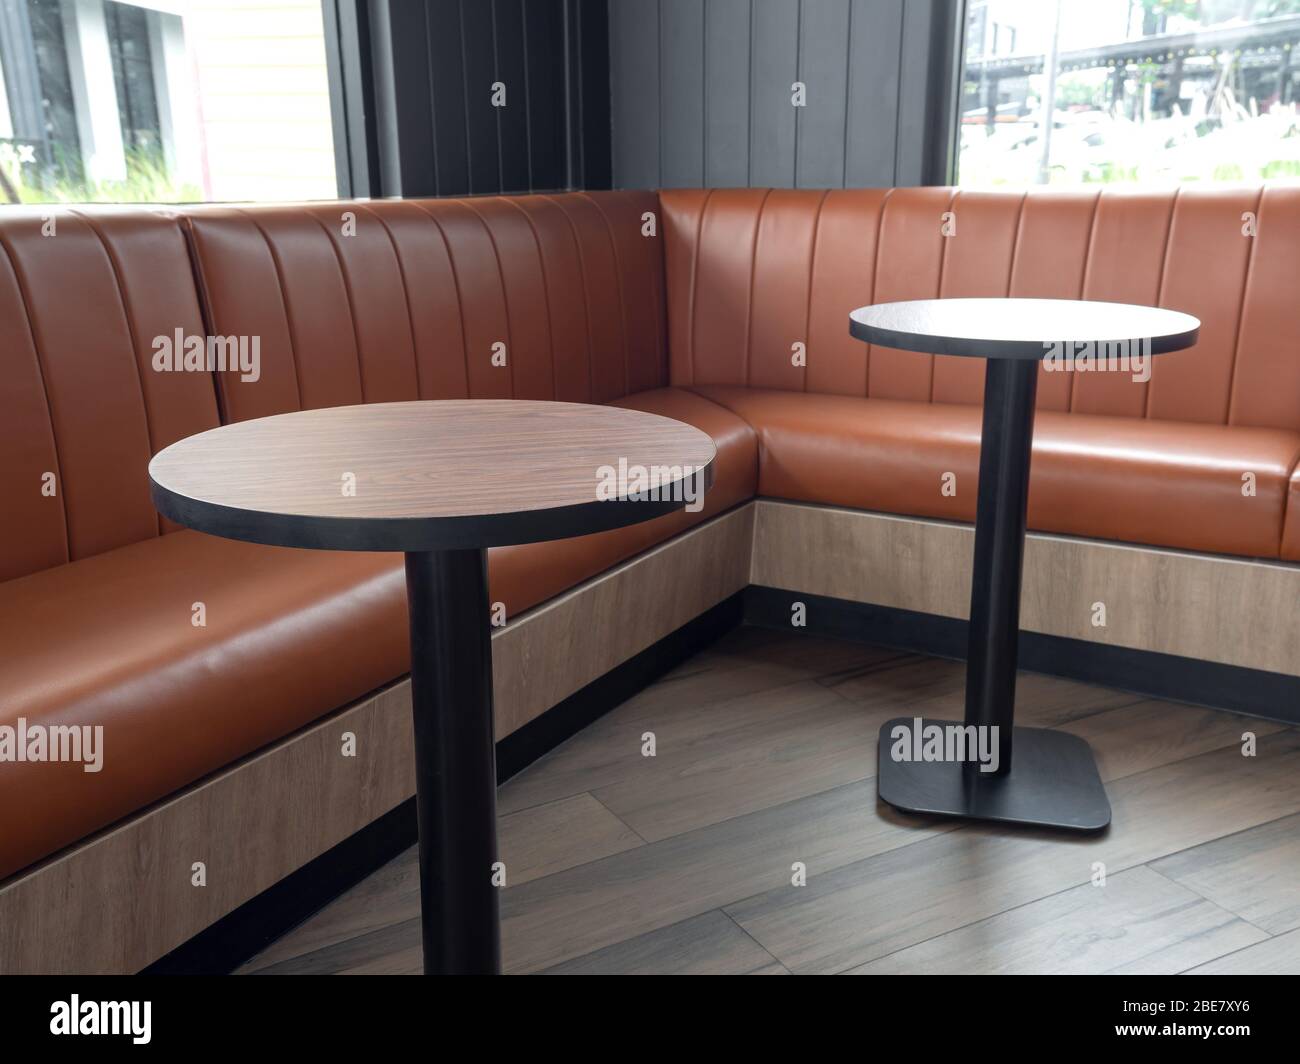 Decoración de muebles en estilo café retro. Mesas redondas vacías de madera  y sofá de cuero naranja en el suelo de madera con luz natural Fotografía de  stock - Alamy